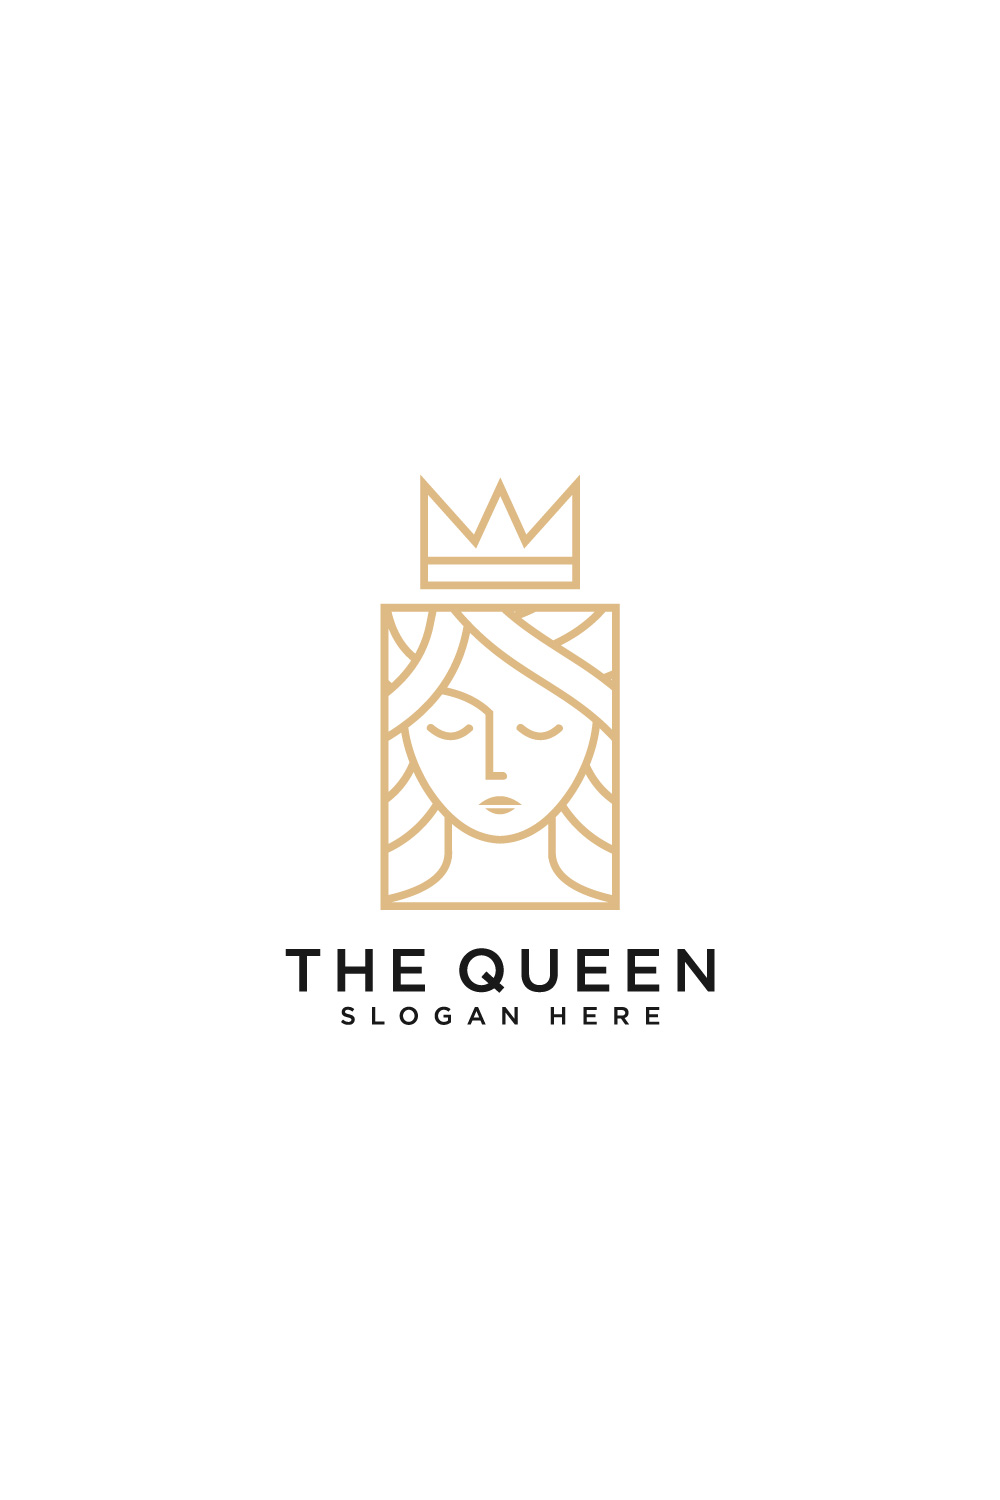 queen logo vector designbeauty woman face logo pinterest preview image.